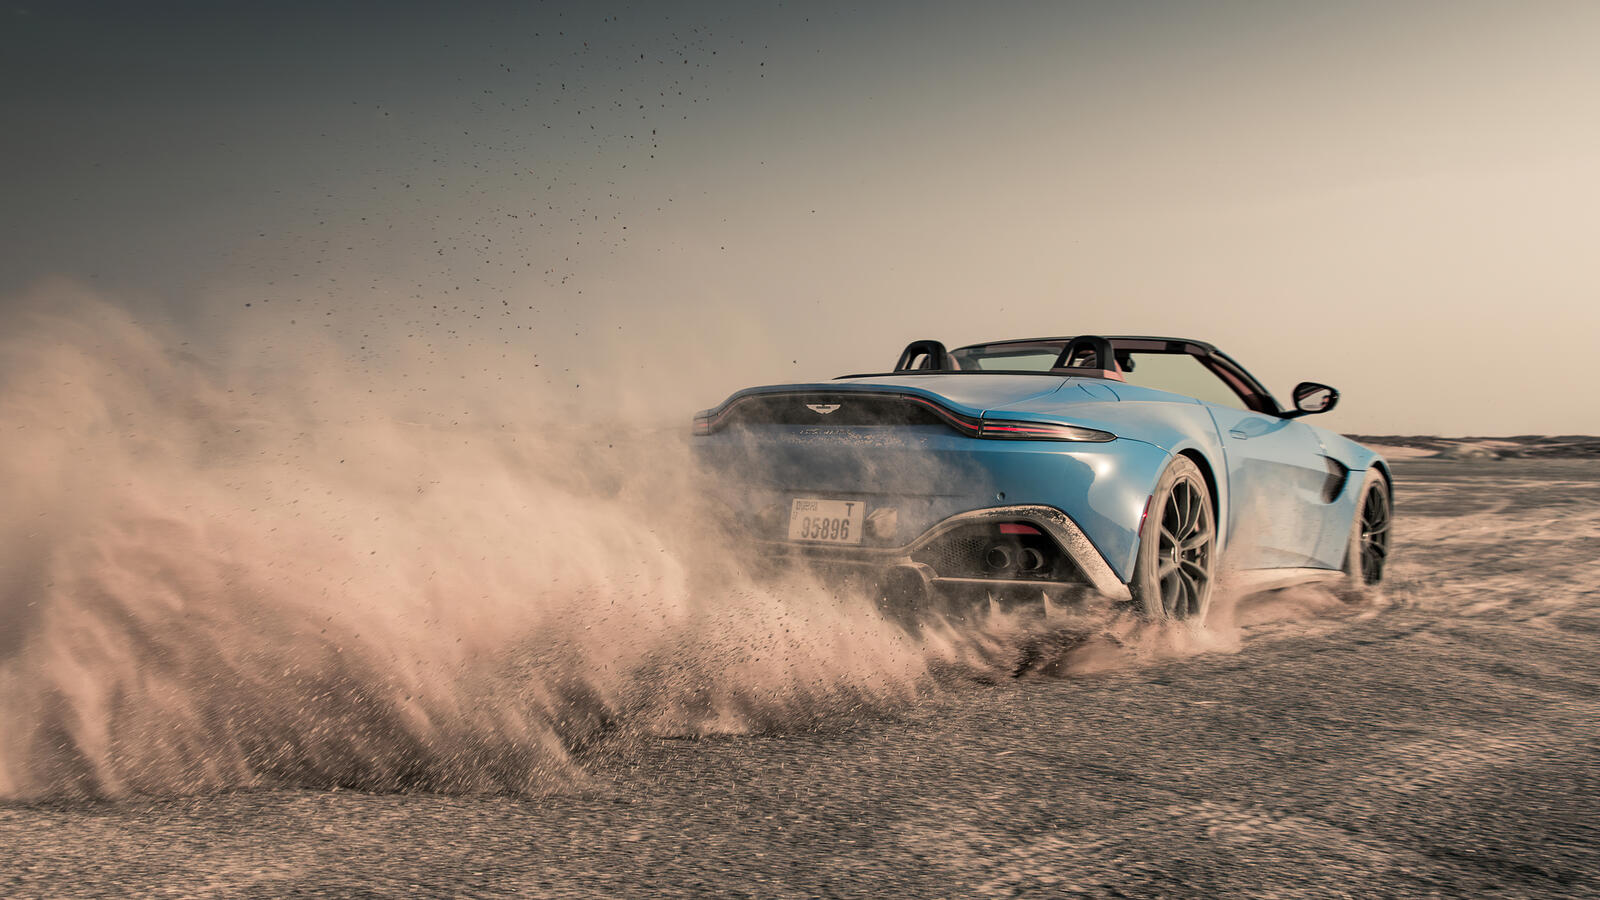 Free photo On a blue Aston Martin through the dust